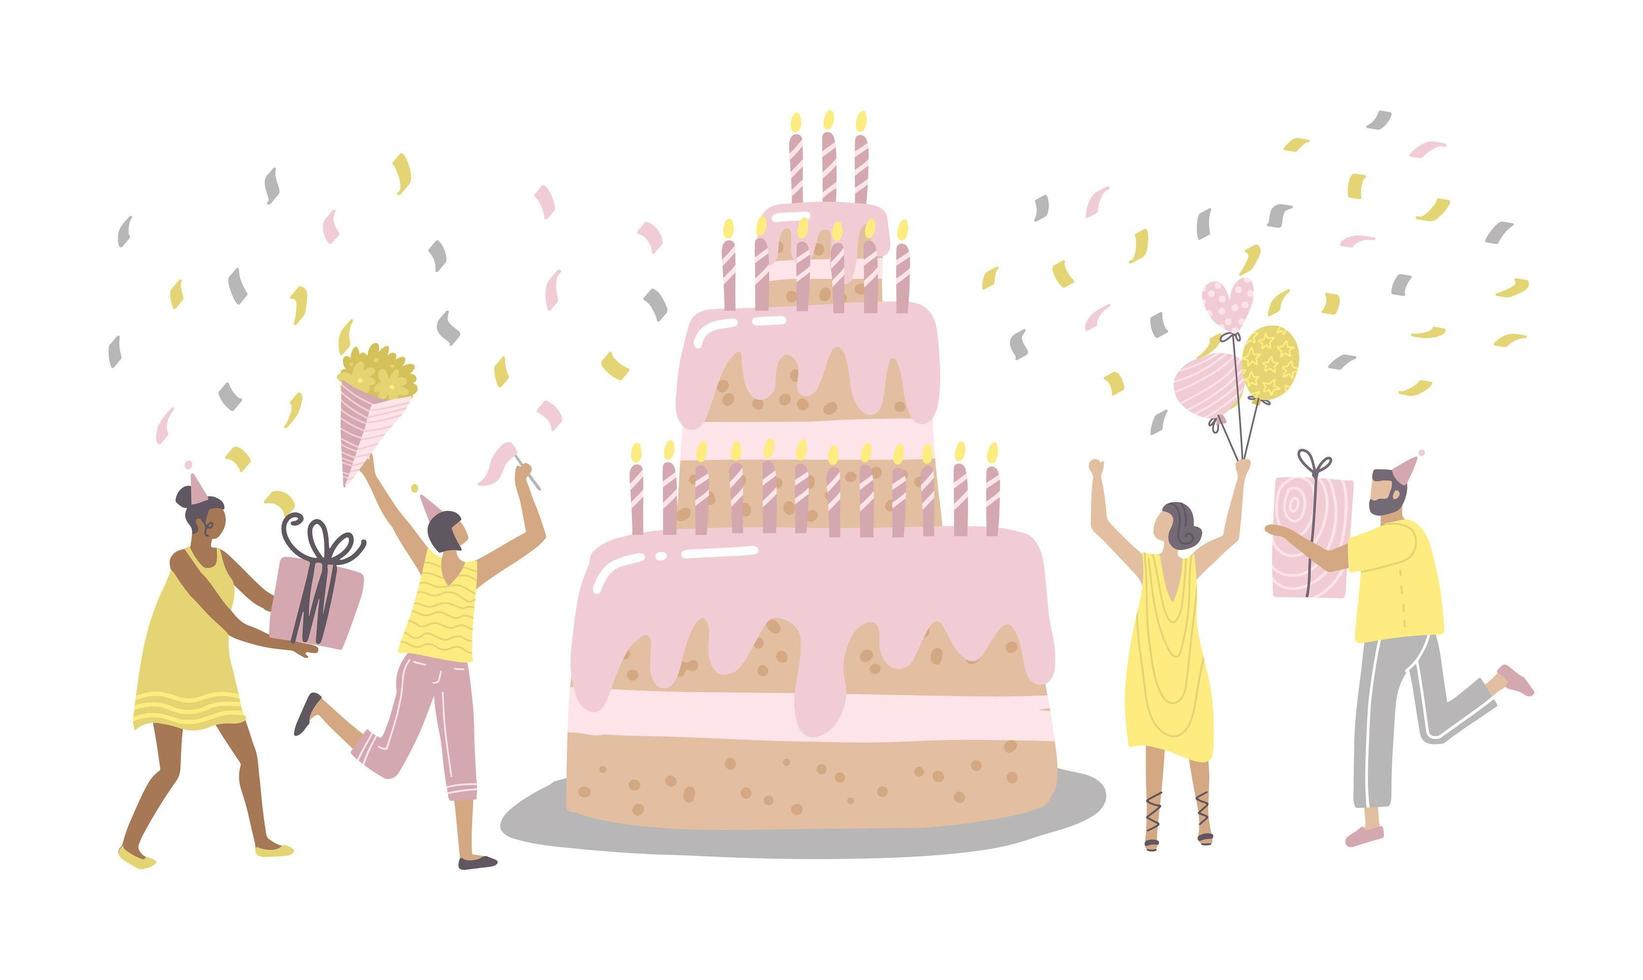 personnages de personnes dansant près du gâteau d'anniversaire et célébrant. femme et homme tenant des cadeaux et des ballons. amis profitant de la fête d'anniversaire. notion de joyeux anniversaire. illustration vectorielle à main plate. vecteur